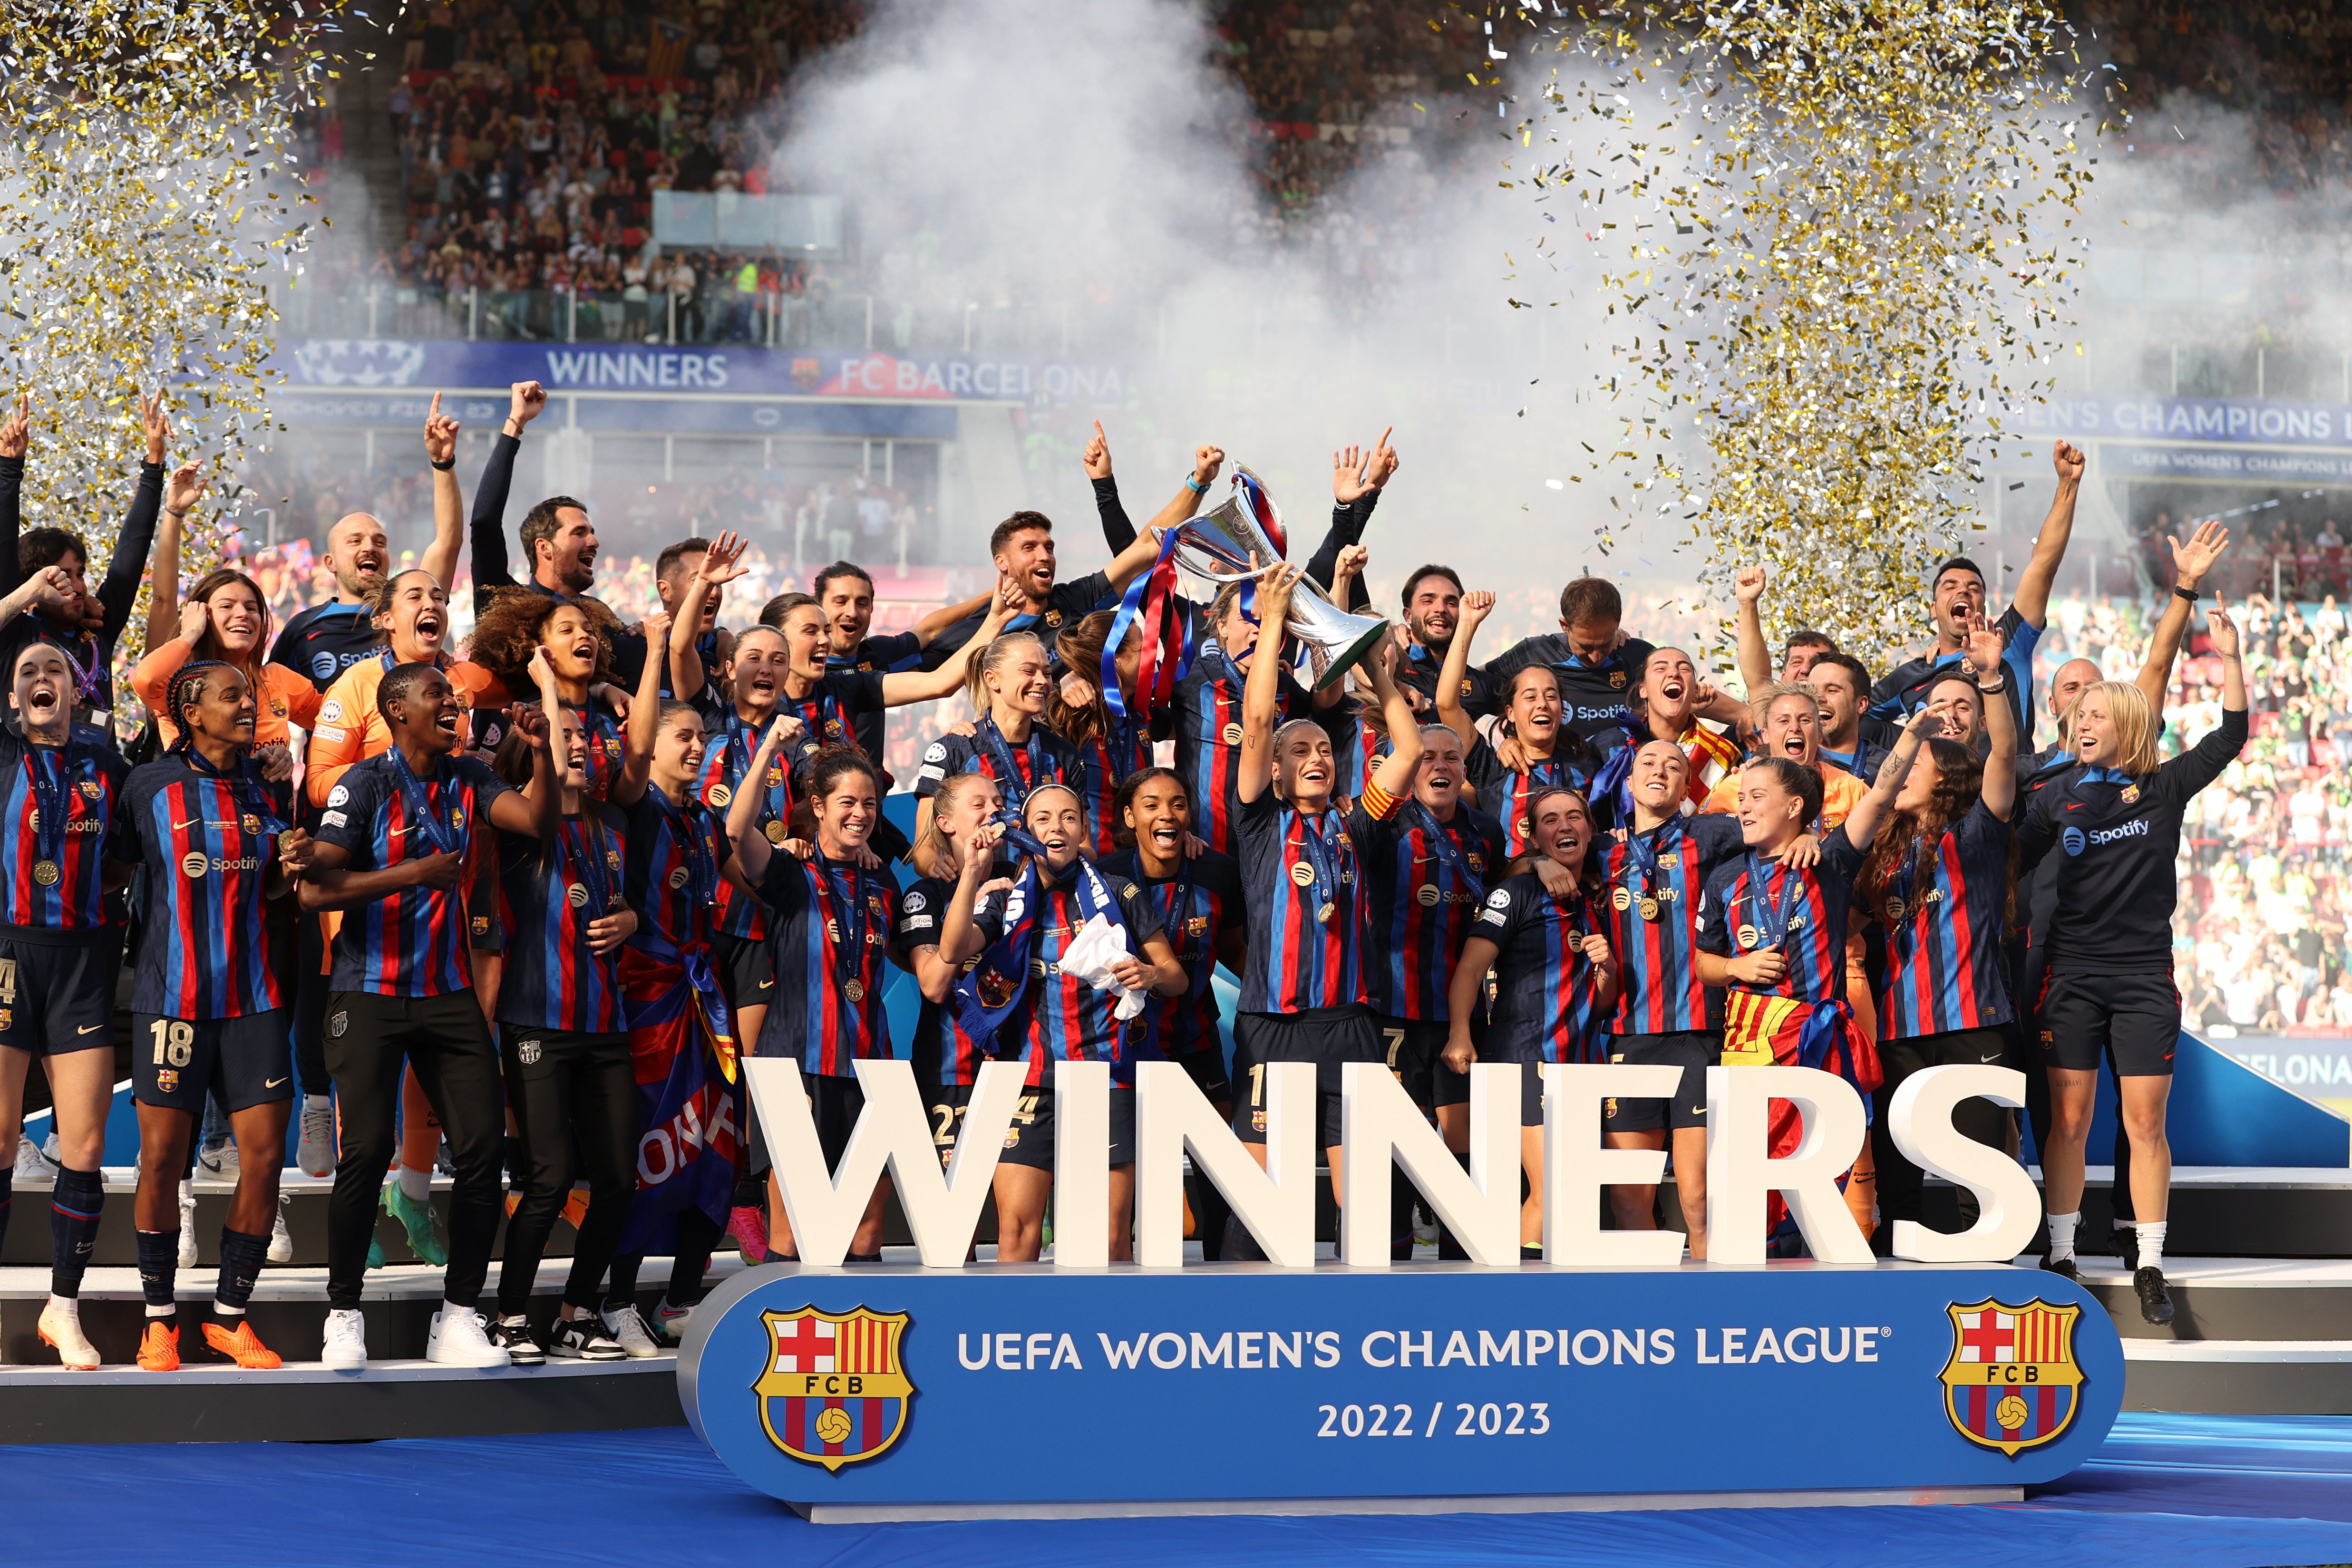 Barcelona were last season’s Women’s Champions League winners